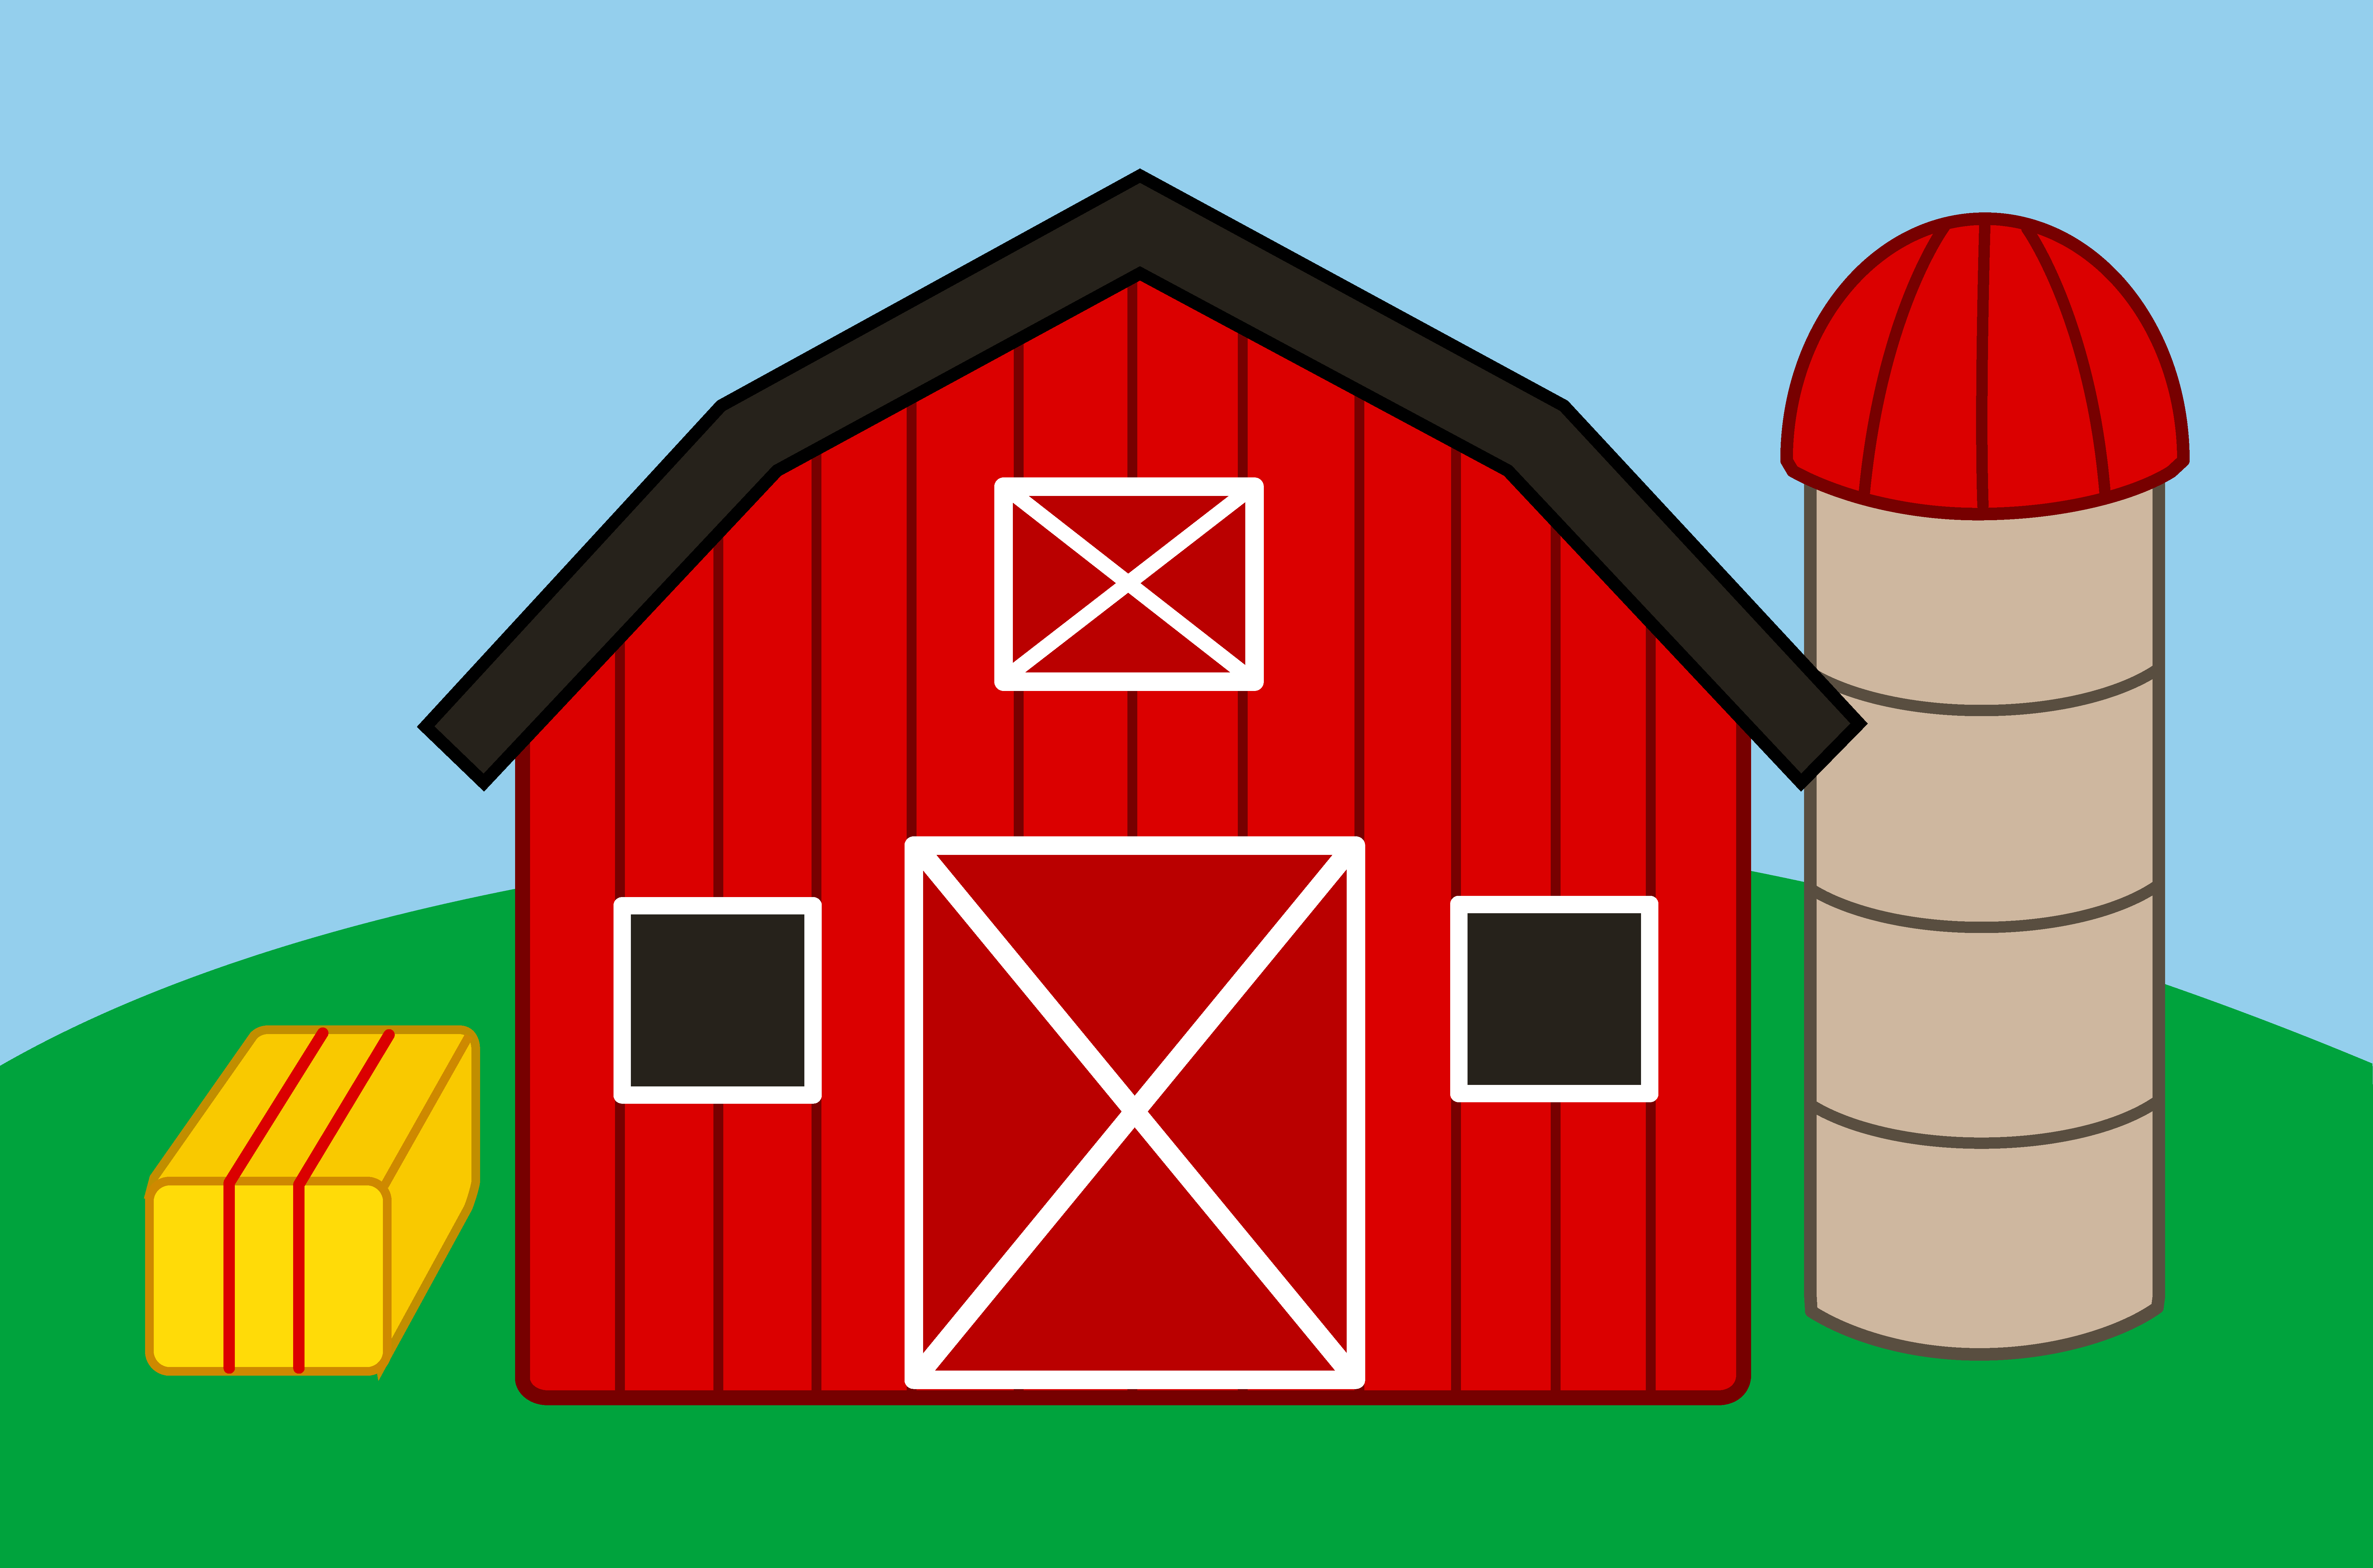 A farmhouse, Landscape, Build